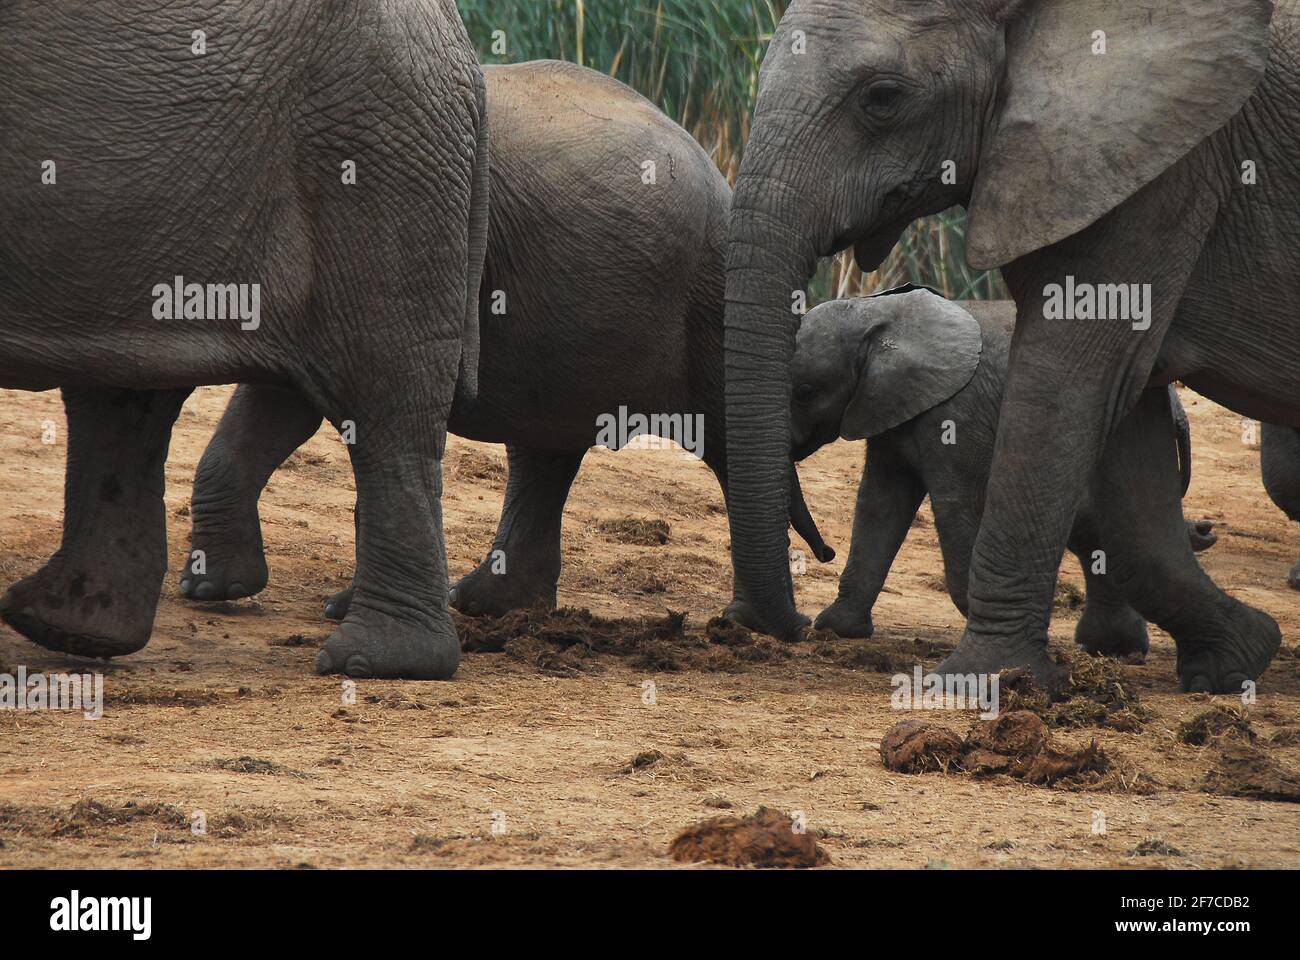 Nahaufnahme eines wilden jungen Elefantenkalbes, das von der Herde durch einen Spaziergang zwischen den erwachsenen Tieren geschützt wird. Aufgenommen während einer Safari in Südafrika. Hinweis Stockfoto